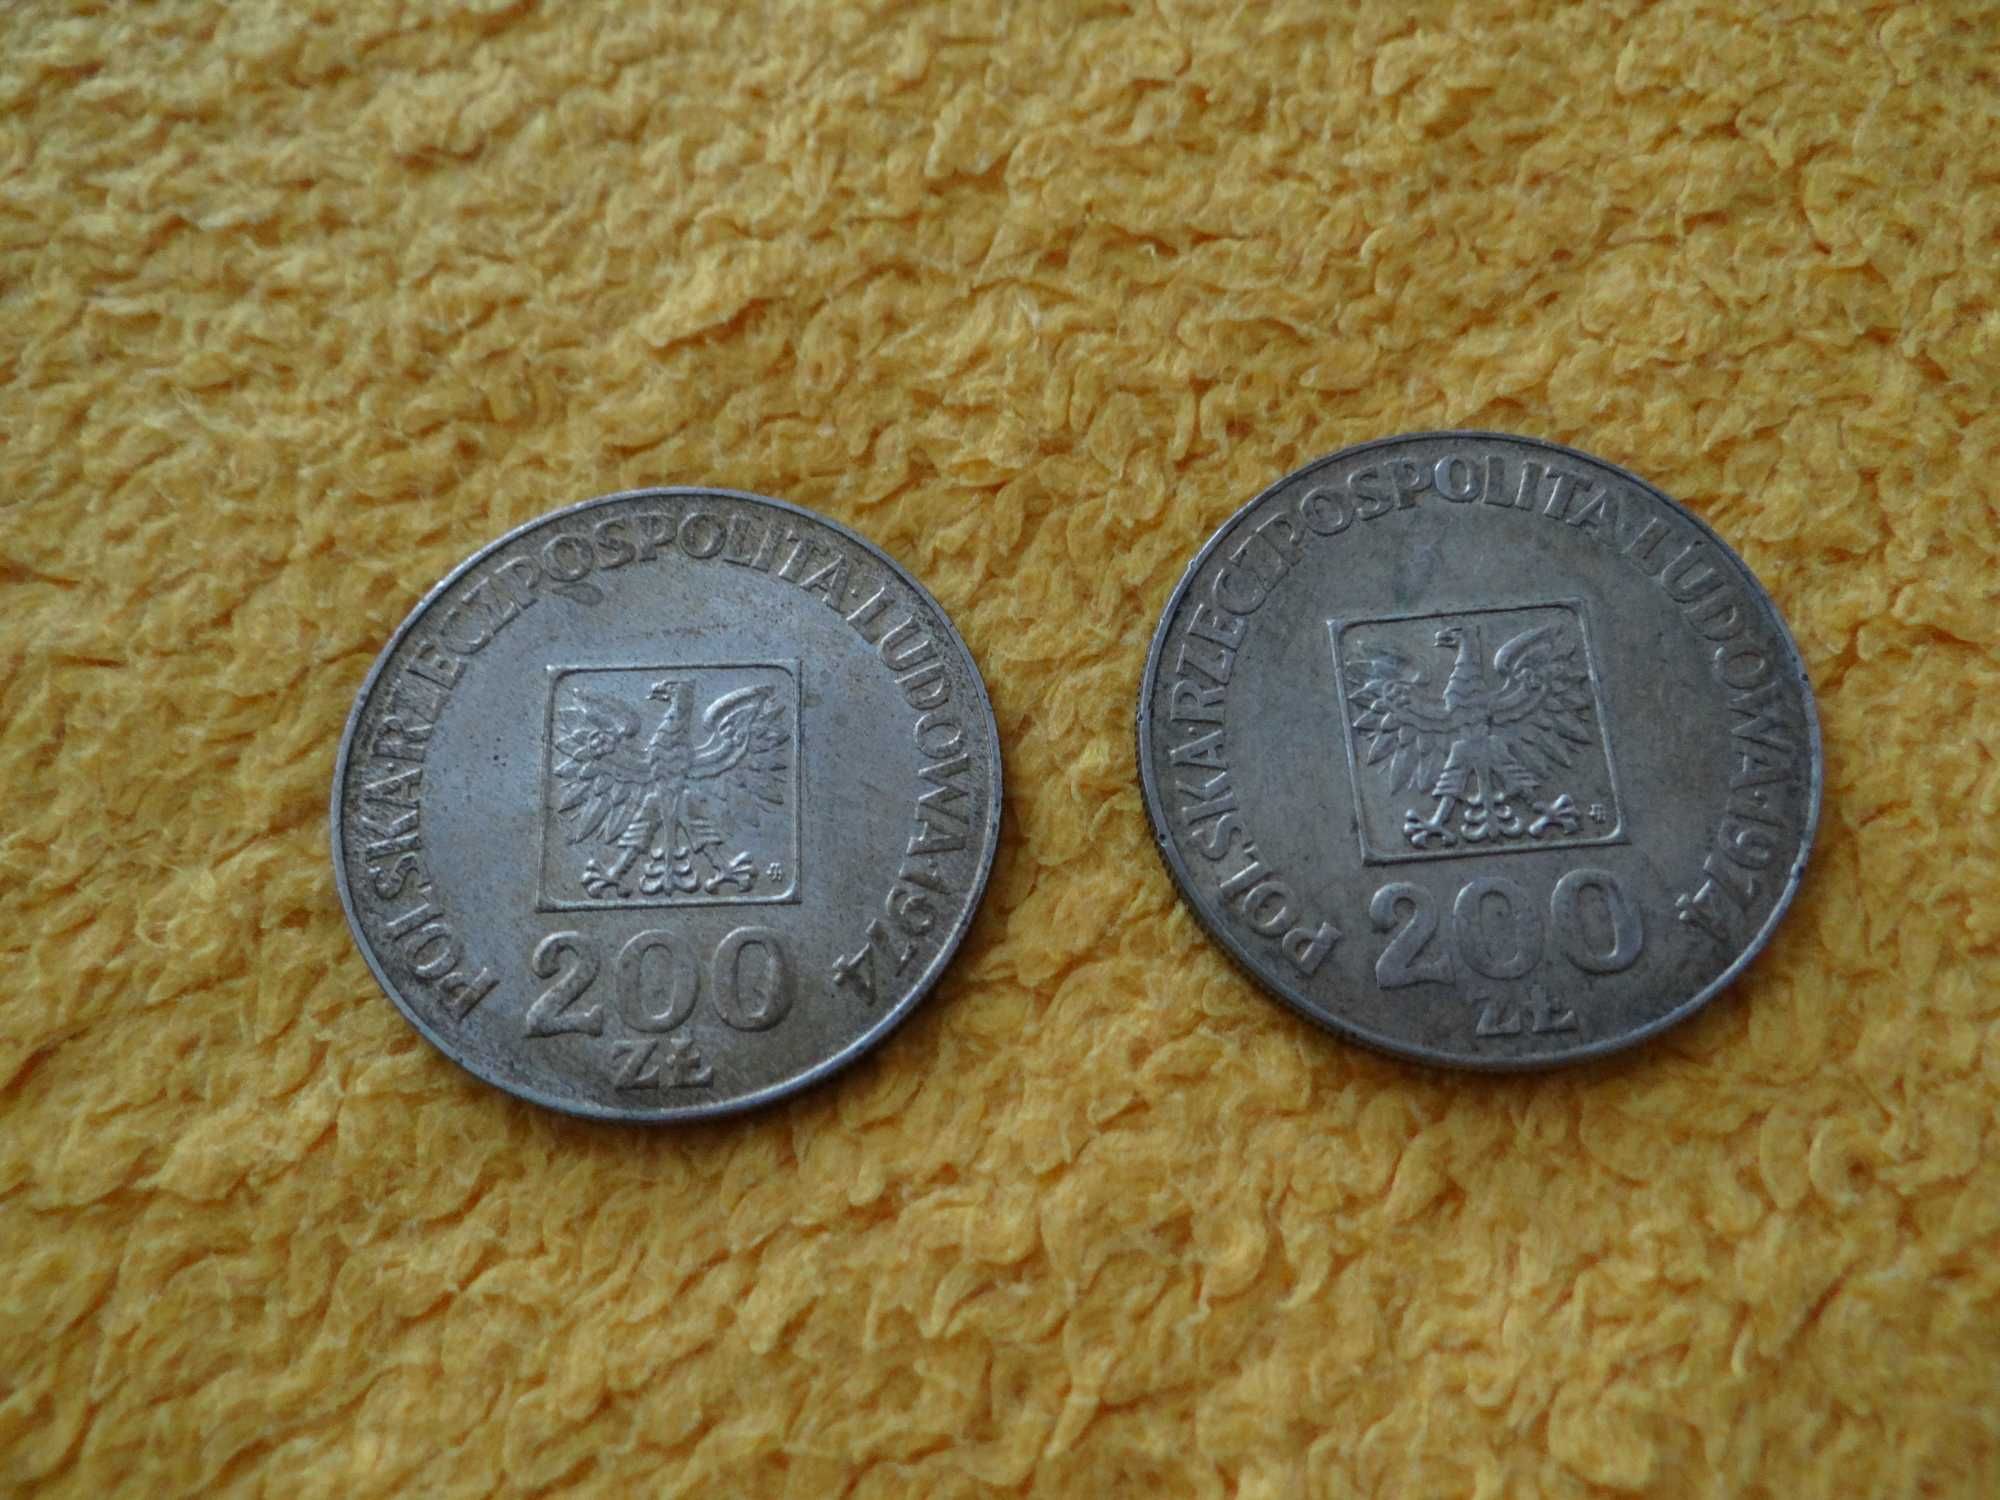 200 zł - XXX Lat PRL 1974, 200 zł - Igrzyska XXI Olimpiady 1976